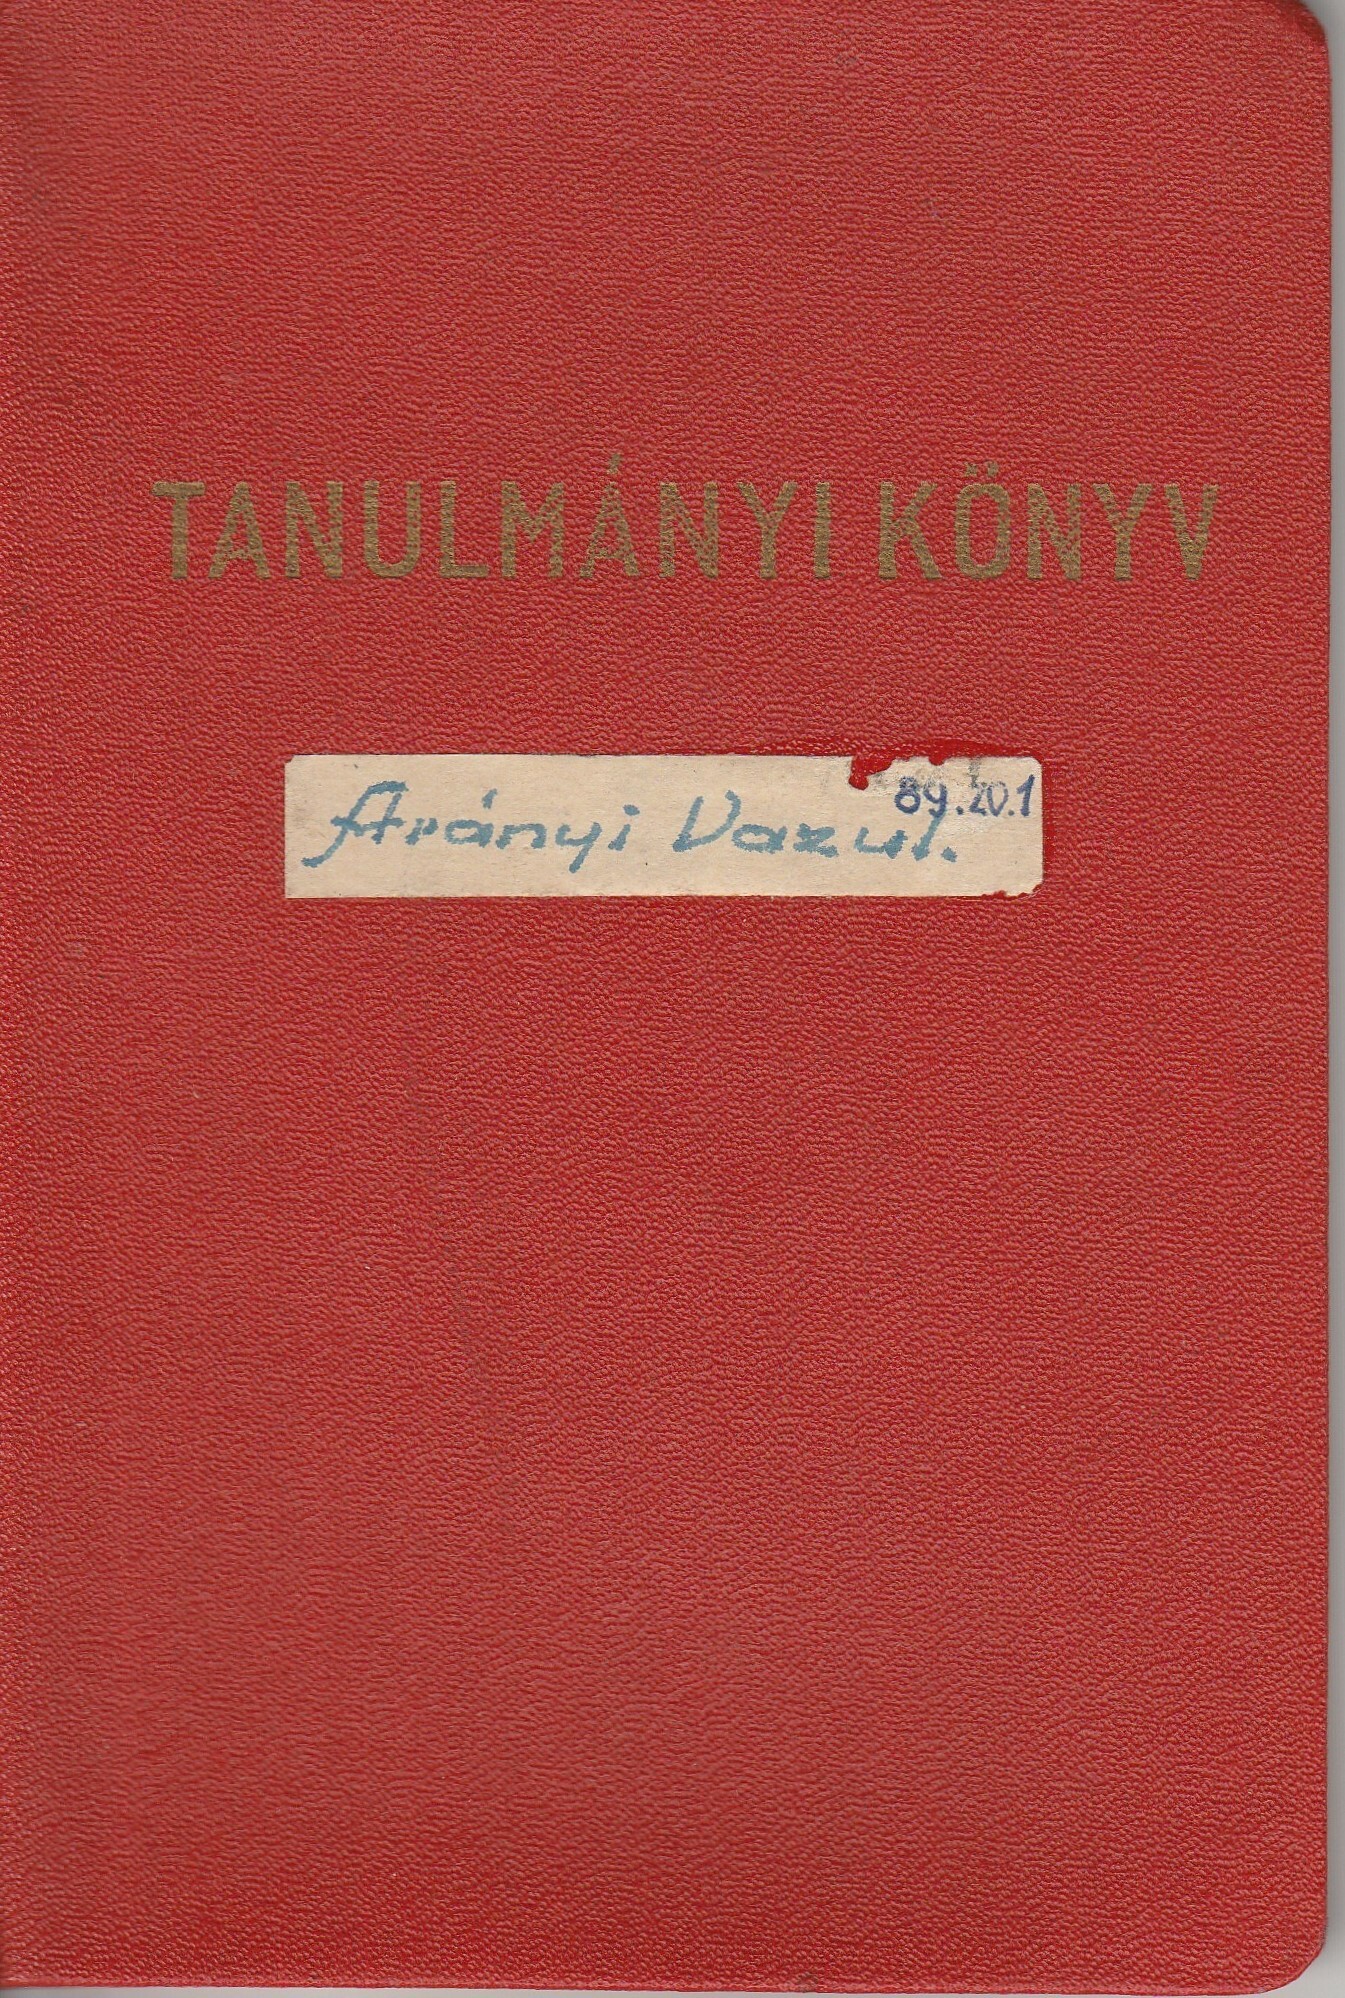 Tanulmányi könyv szemináriumokhoz (Tapolcai Városi Múzeum CC BY-NC-SA)